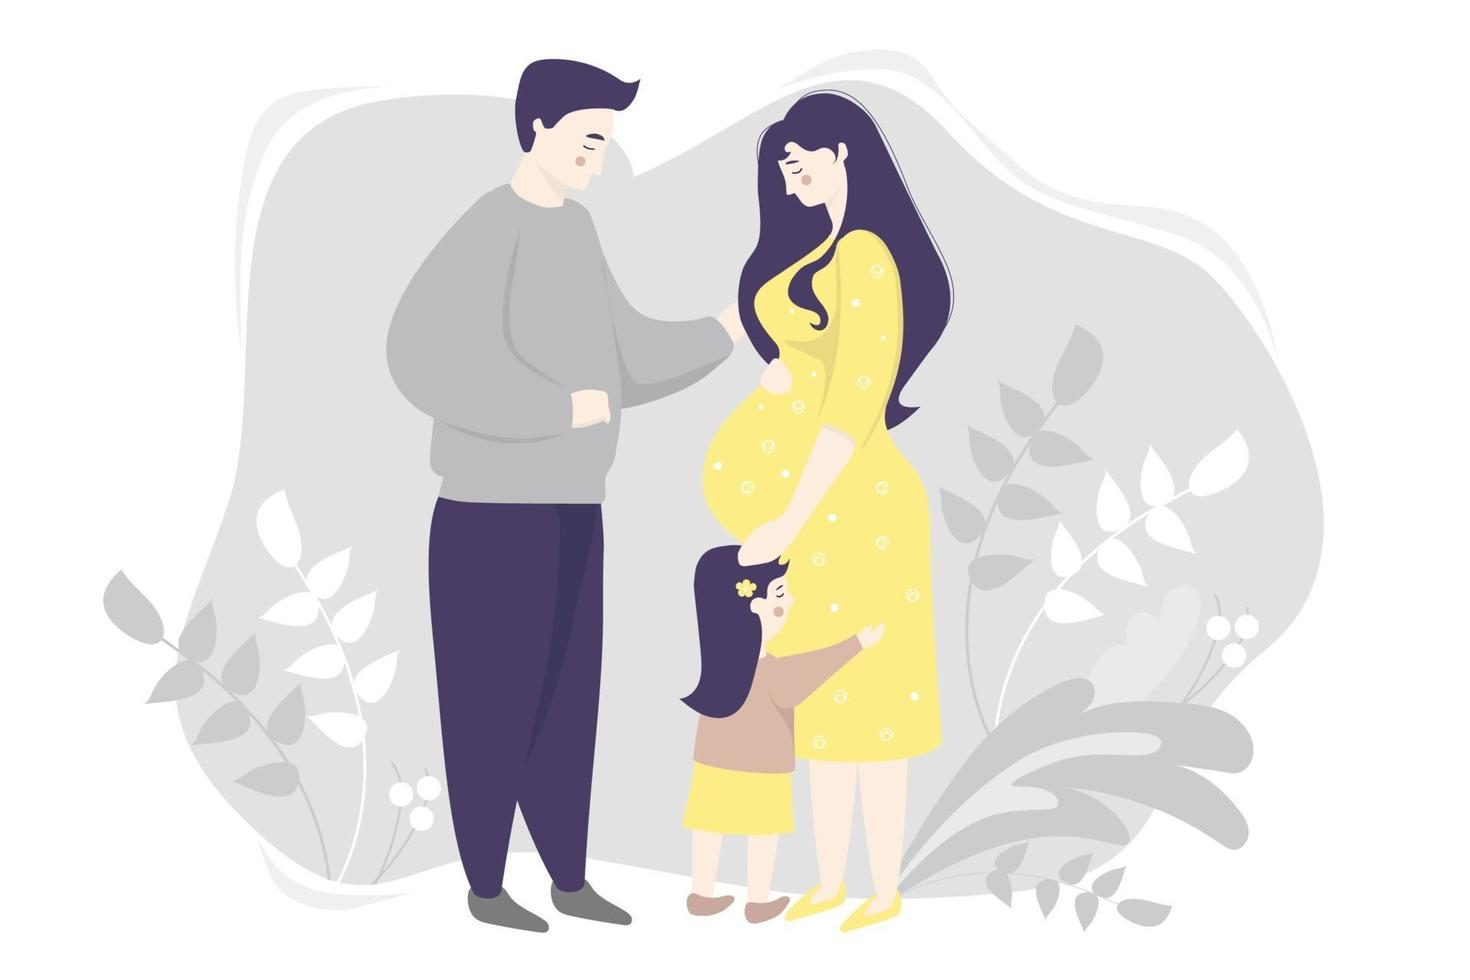 maternité. plat de vecteur de famille - femme enceinte heureuse dans une robe jaune, étreint doucement son ventre. à côté d'elle, une petite fille et un mari sur fond gris avec des plantes. illustration vectorielle